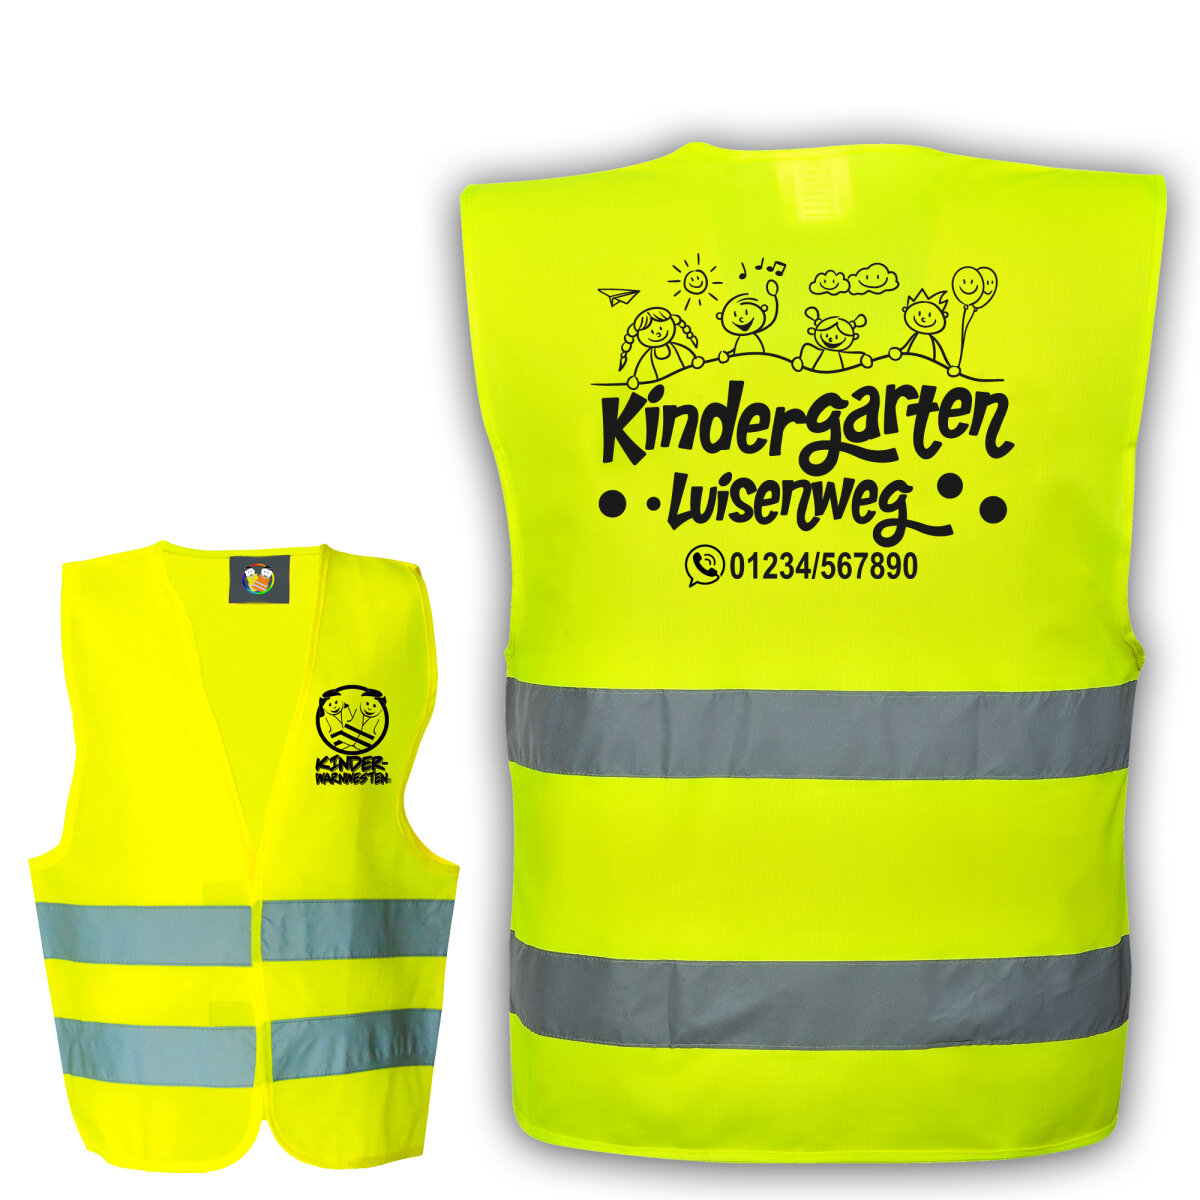 Kindergarten Warnweste Neongelb mit Logo Aufdruck viele